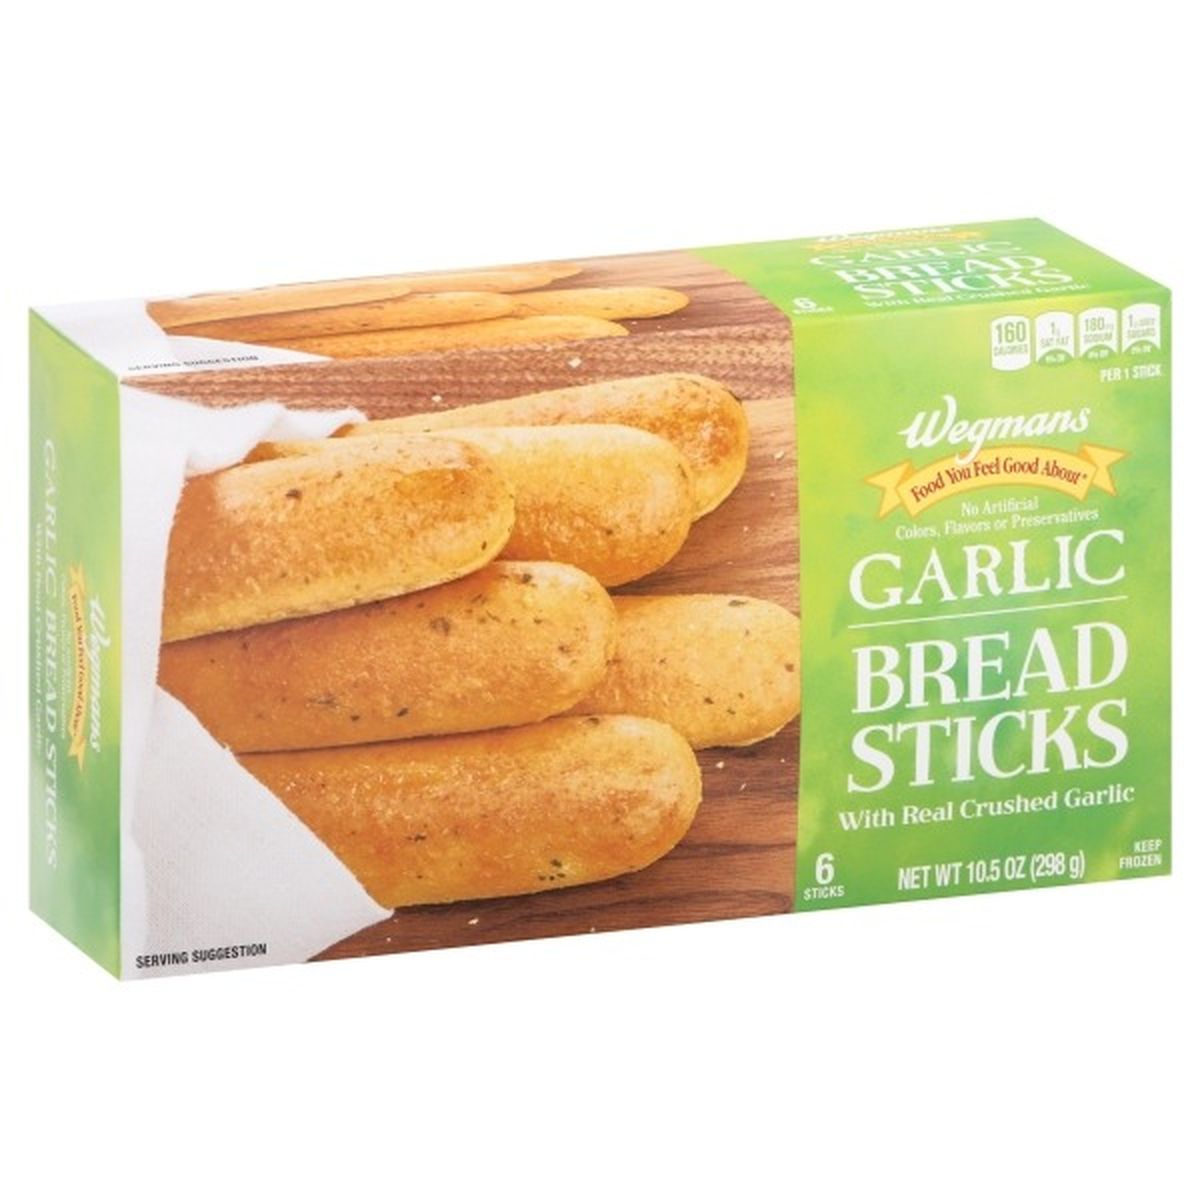 Calories in Wegmans Garlic Bread Sticks